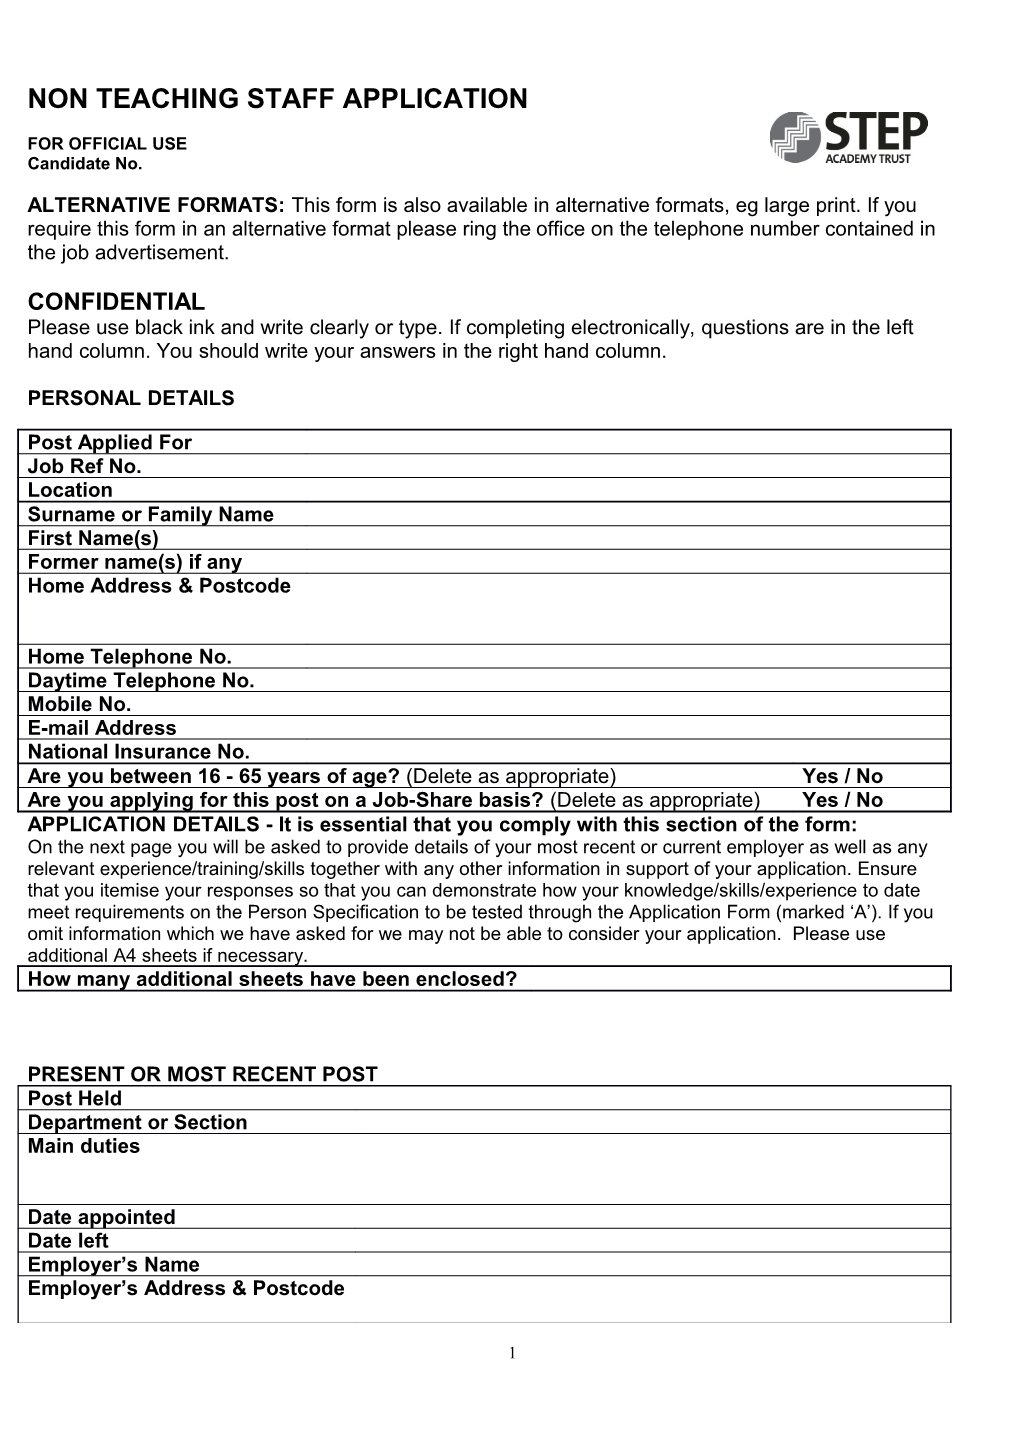 Council Job Application Form